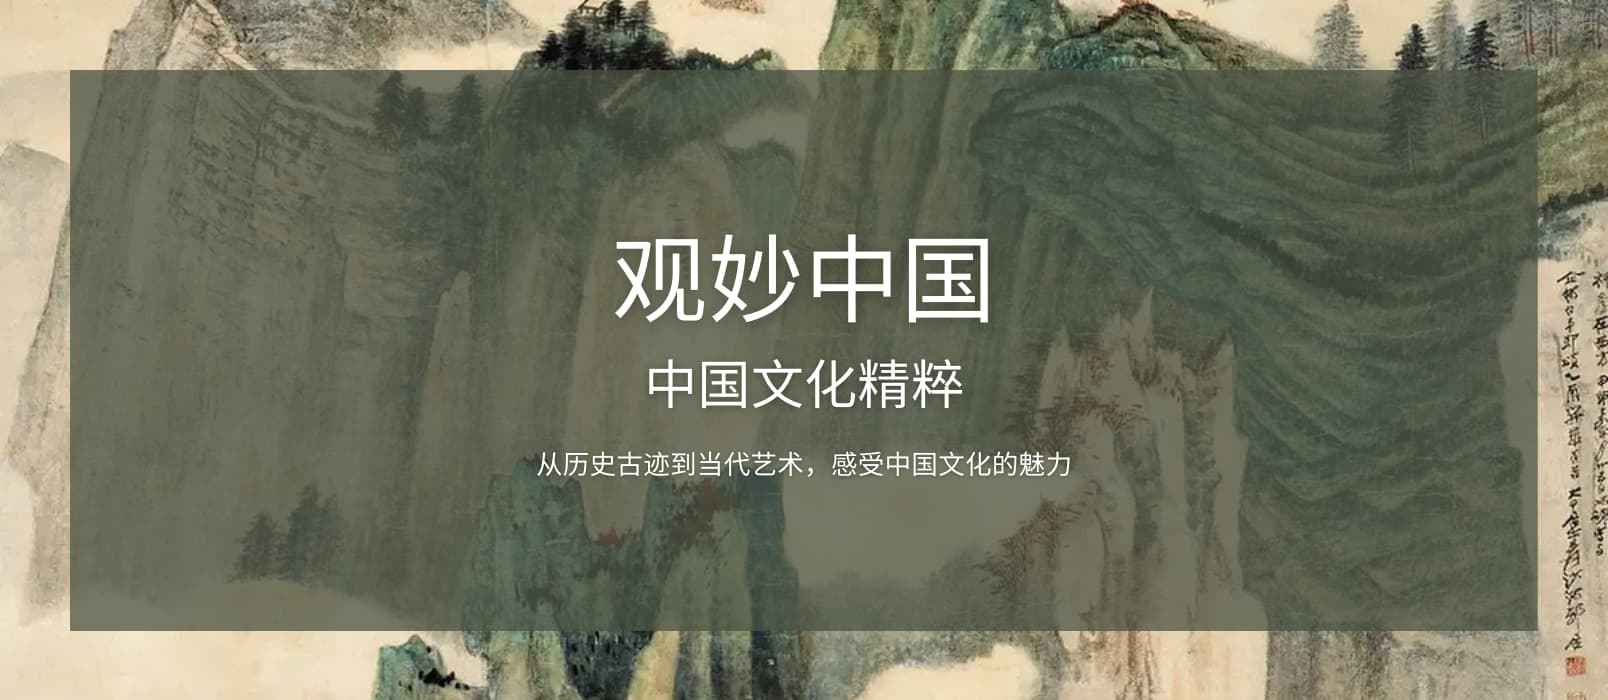 观妙中国 - 在线观看中国 30 家博物馆及艺术文化机构，超过 8000 件藏品和街景[iPhone/Android]